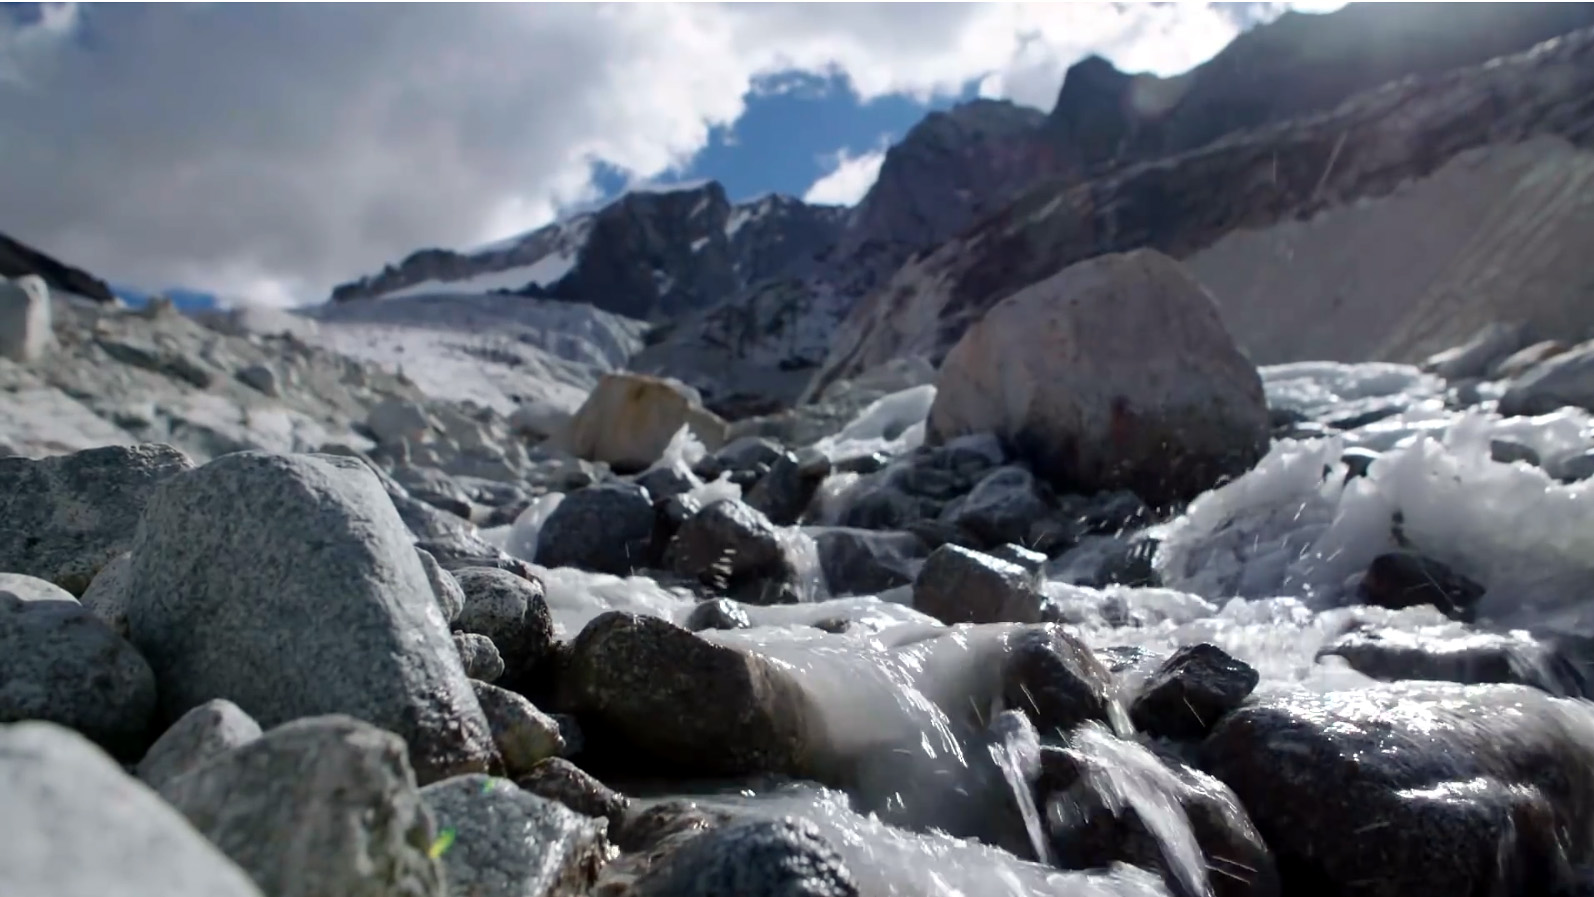 Standbild aus dem BMZ-Video "Gletscherschmelze in Bolivien". Ein vereister Bach fließt vor dem Hintergrund eines verschneiten Hochgebirges.